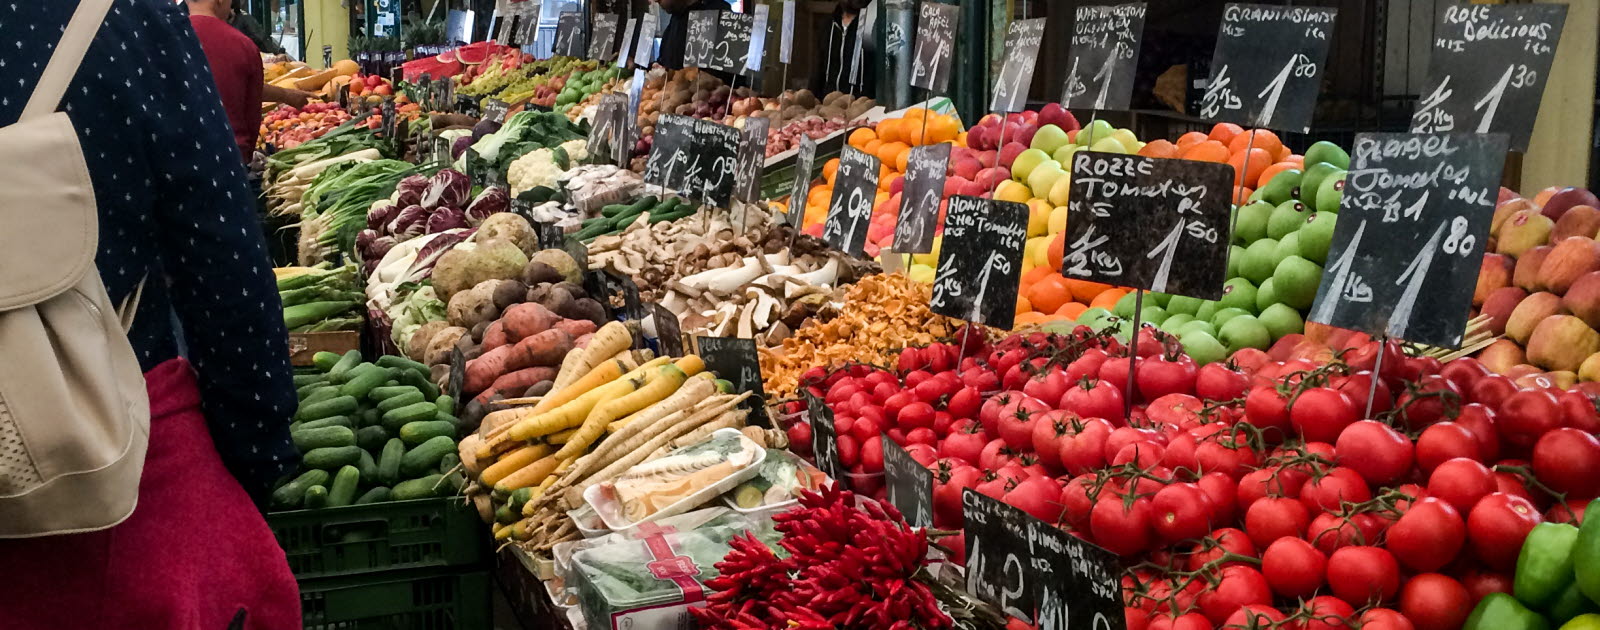 Grönsaker på marknad i Wien